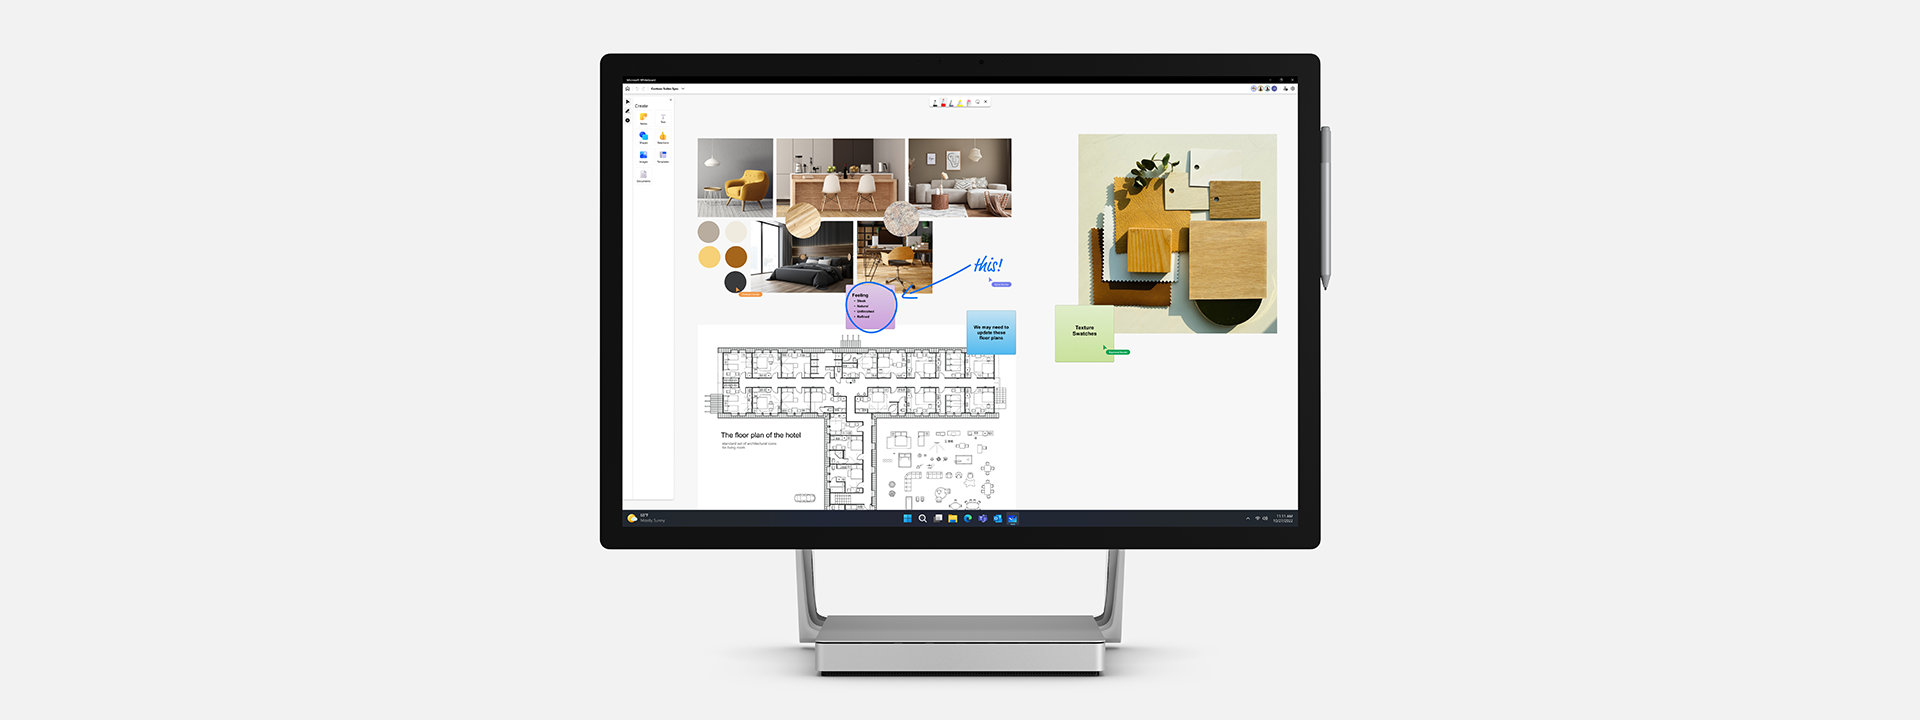 Surface Studio 2+ pour les entreprises avec Microsoft Whiteboard dans Teams à l’écran.